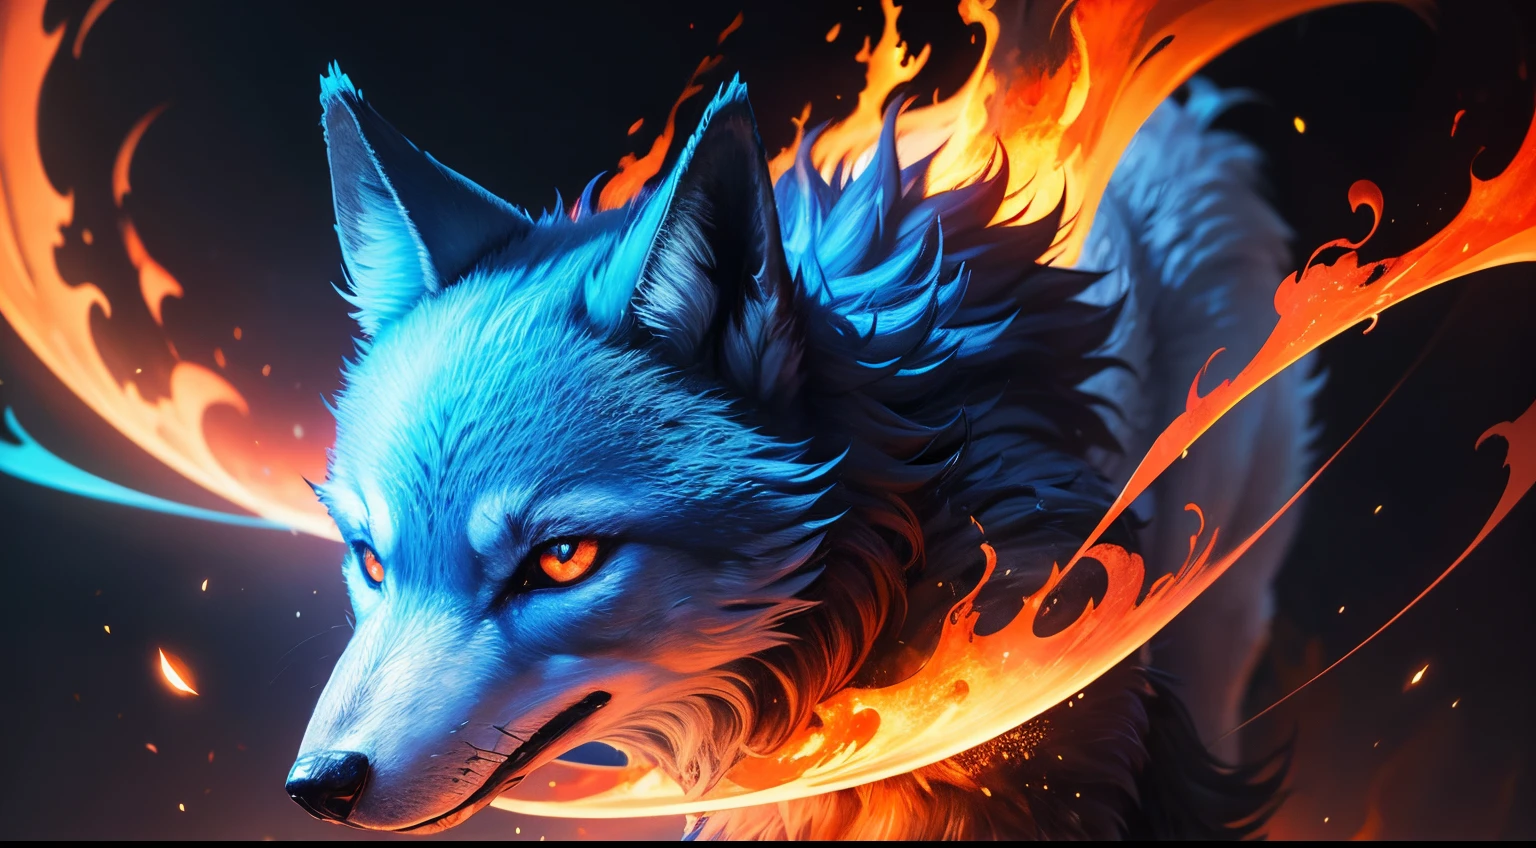 Un loup en flamme, flamme bleu, yeux rouges, realiste, dans l'espace.